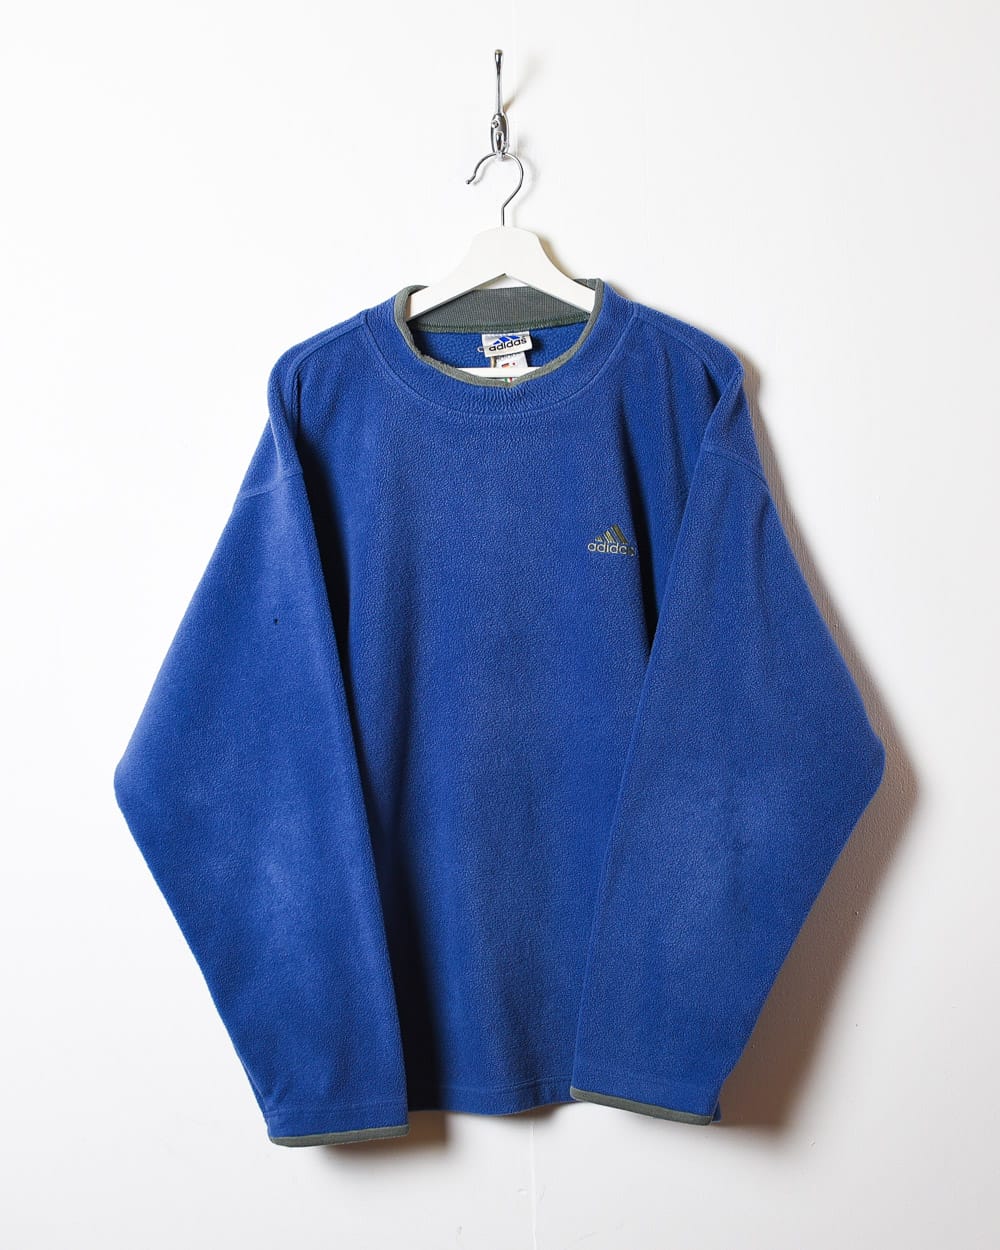 Blue Adidas Pullover Fleece - Medium